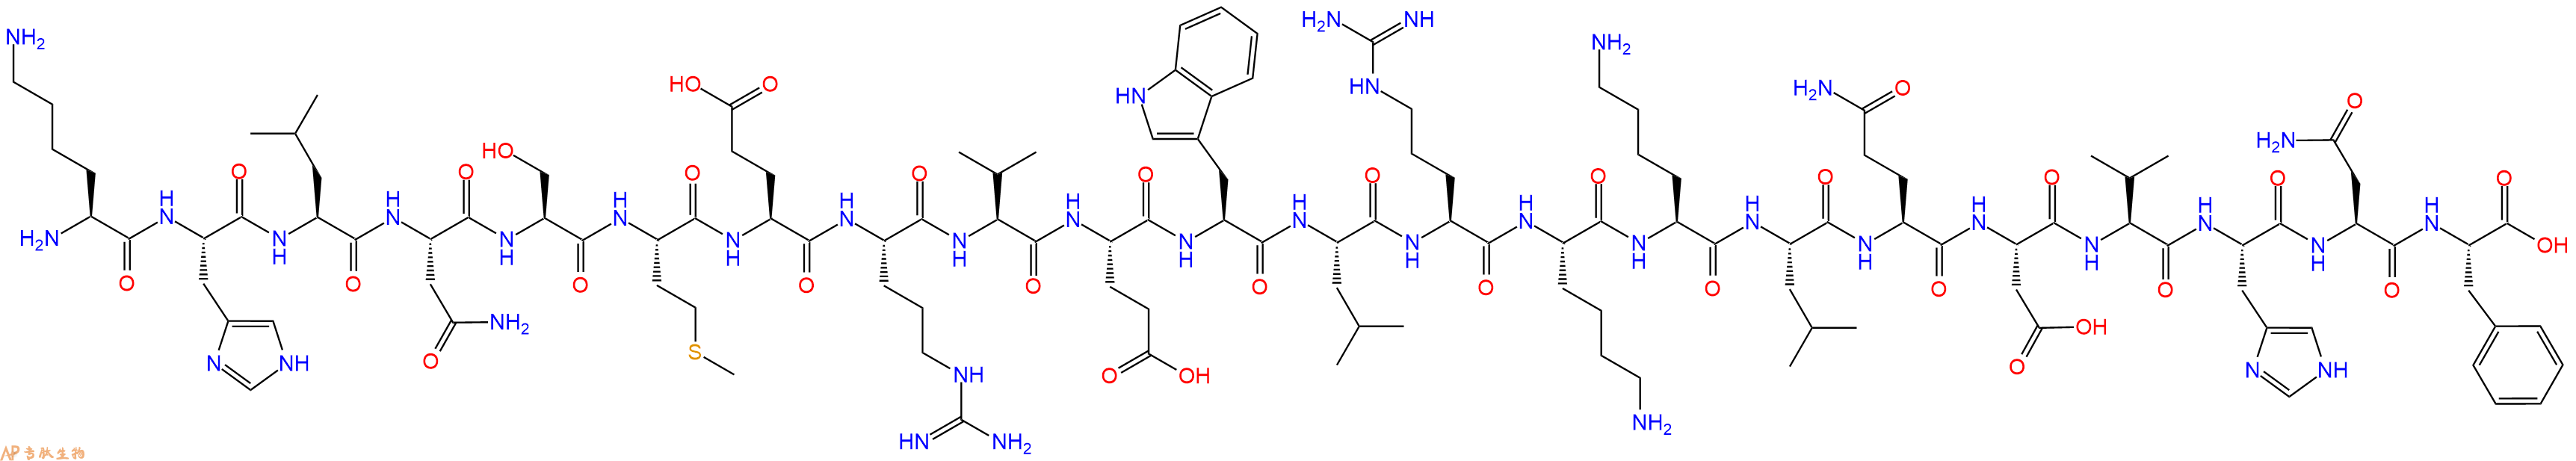 专肽生物产品Parathyroid Hormone(13-34), human81306-64-1